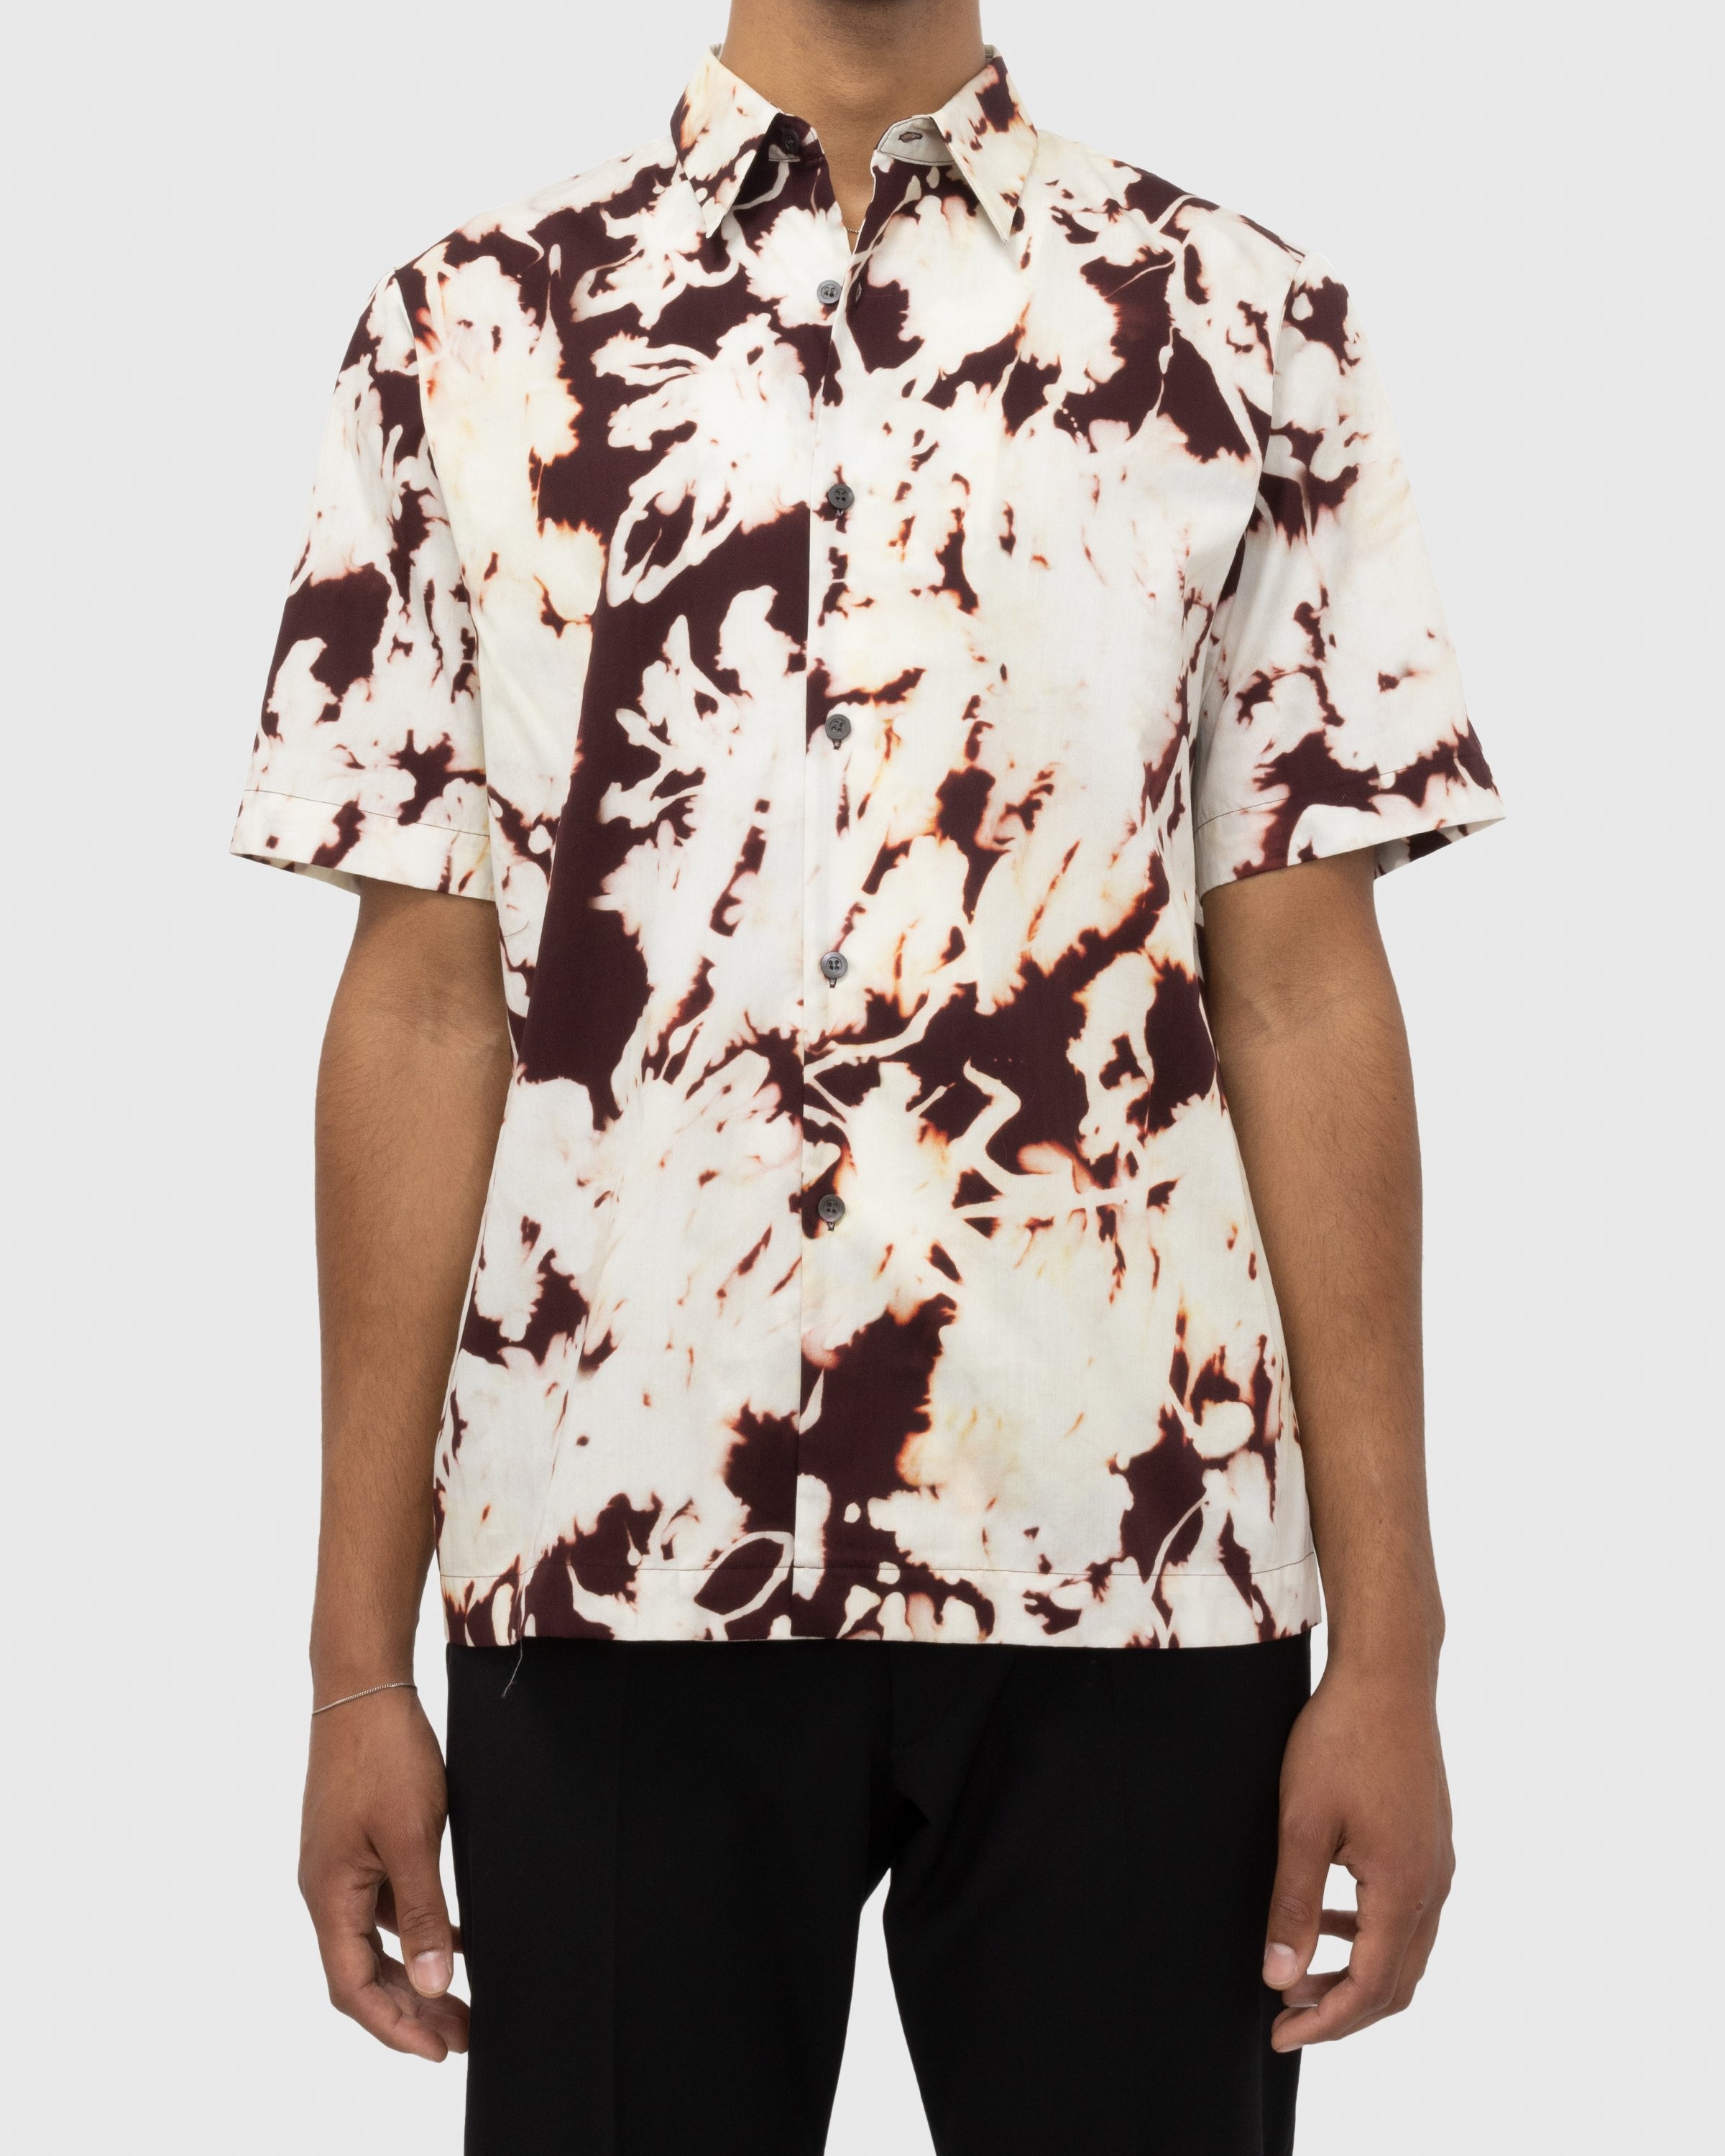 Dries van Noten – Clasen Shirt Multi - Shortsleeve Shirts - Multi - Image 4